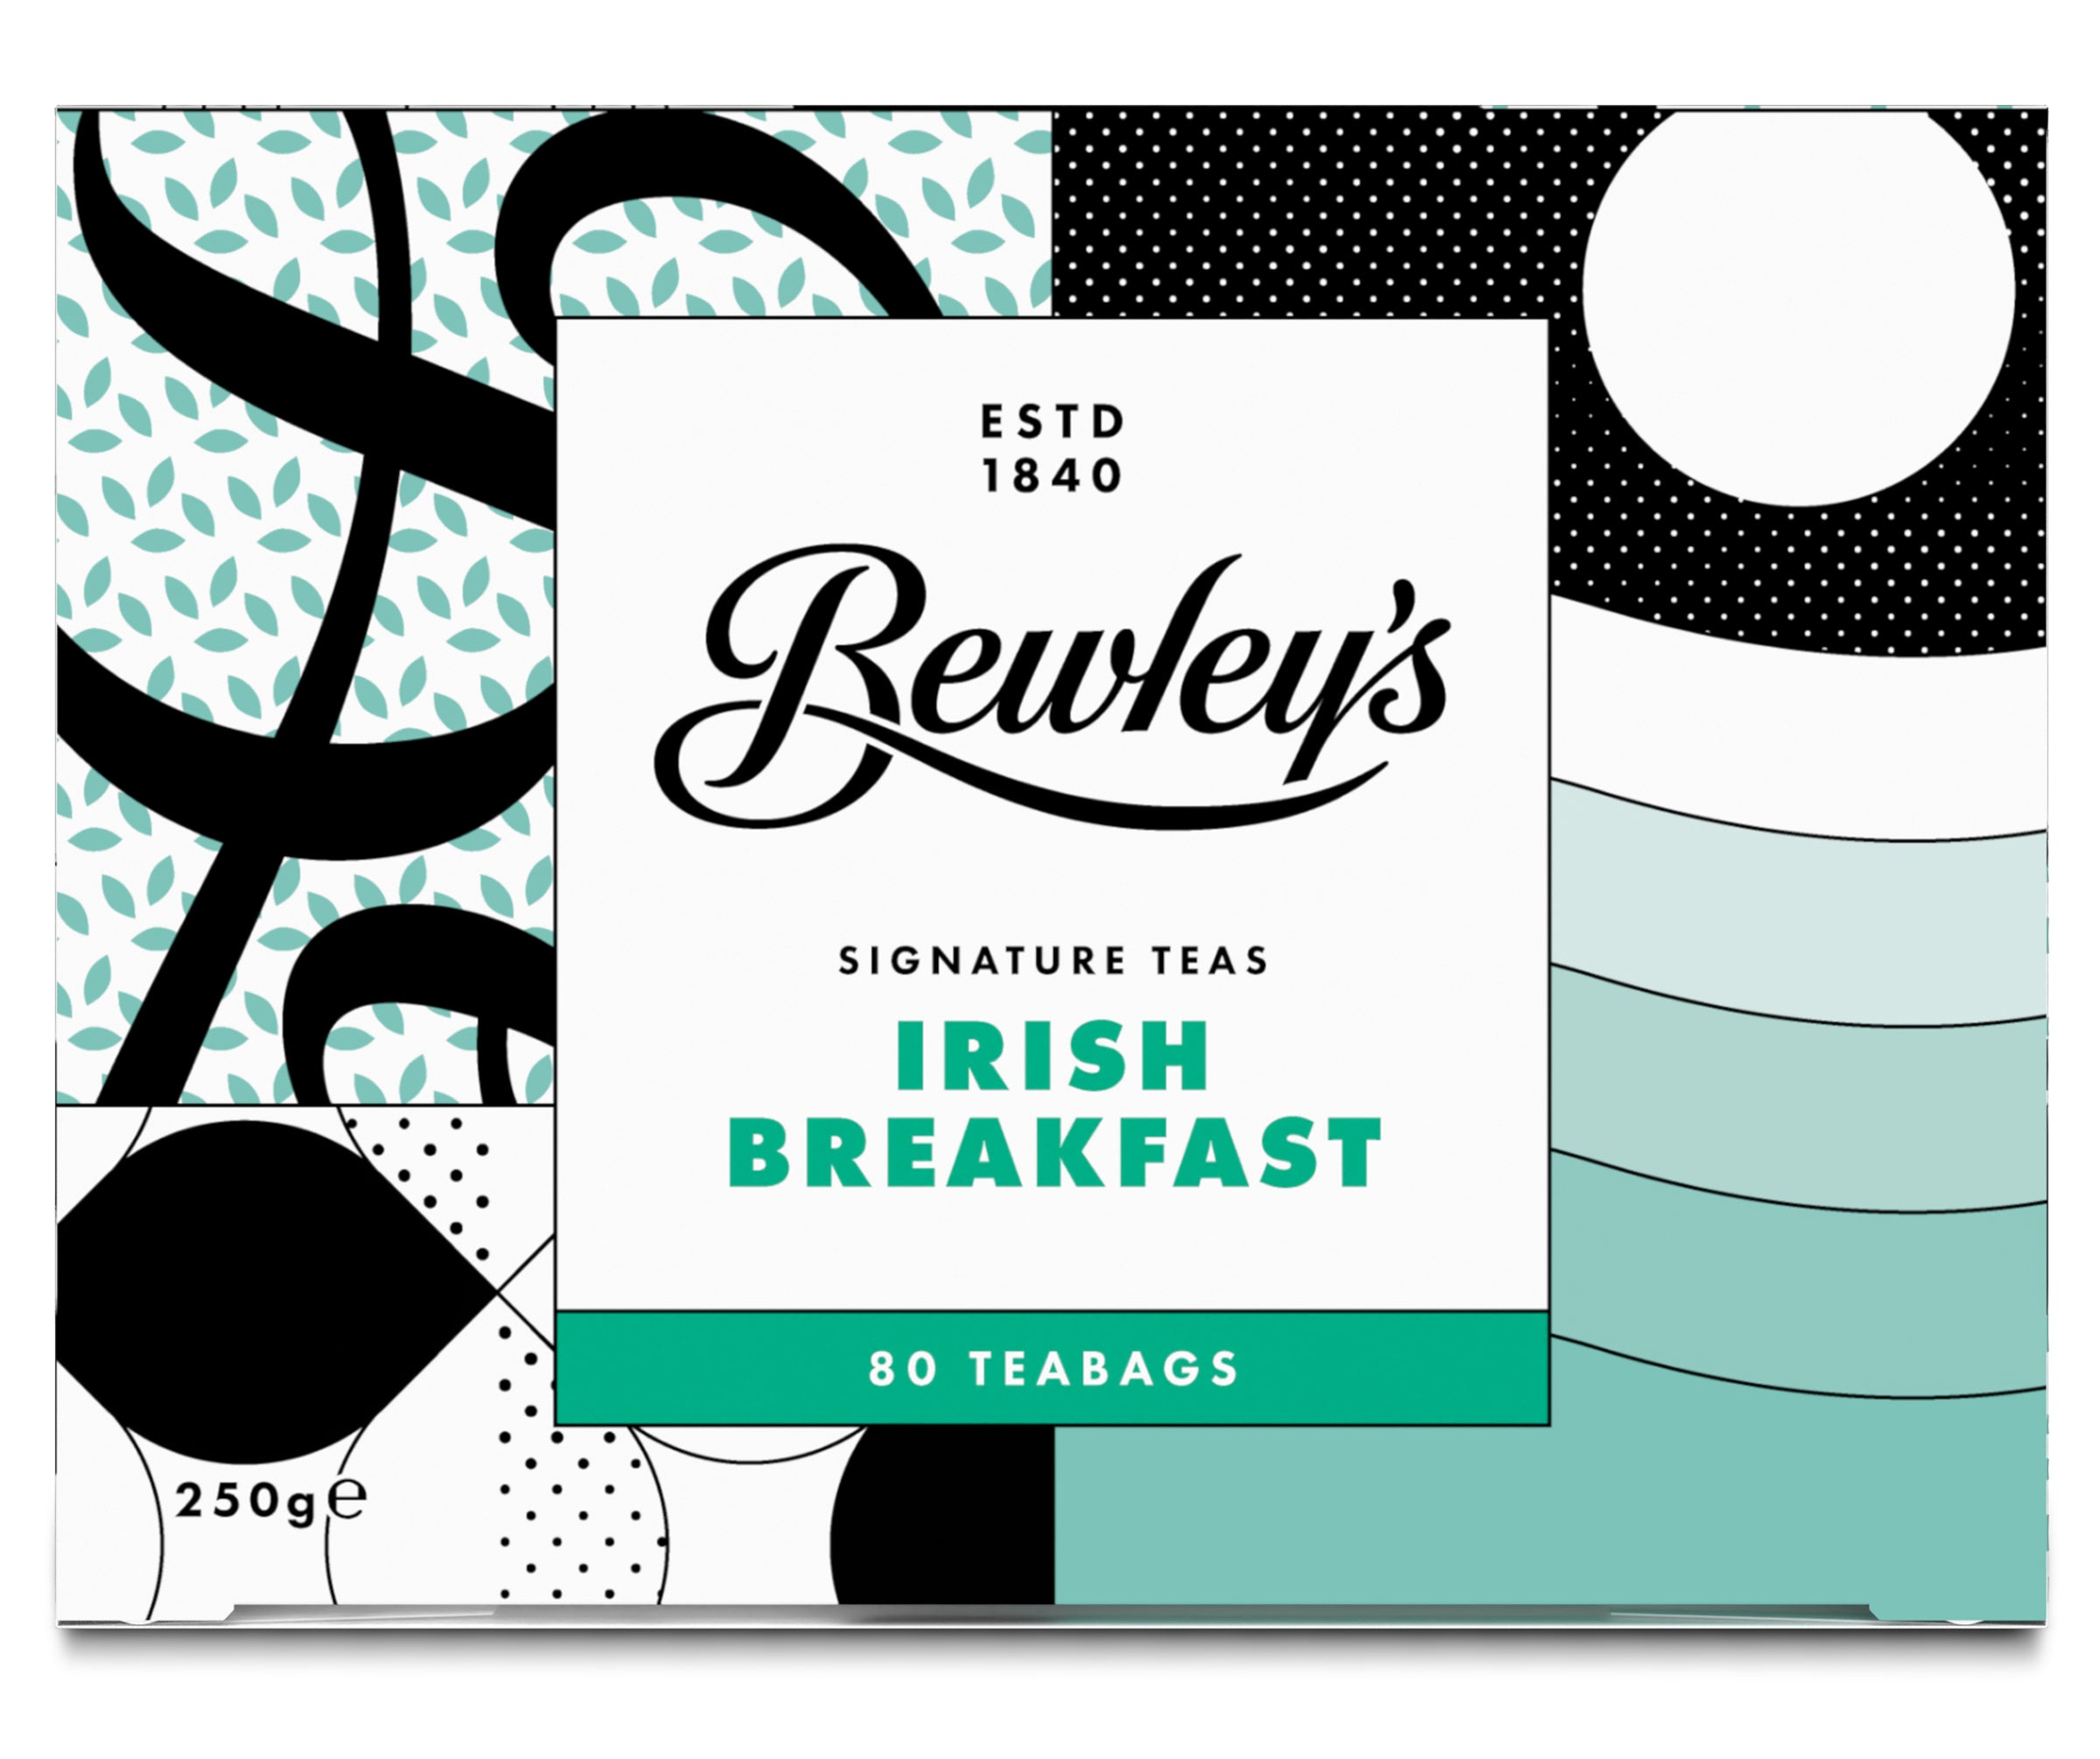 Bewley's Irish Breakfast Tea - Bewley's Tea & Coffee